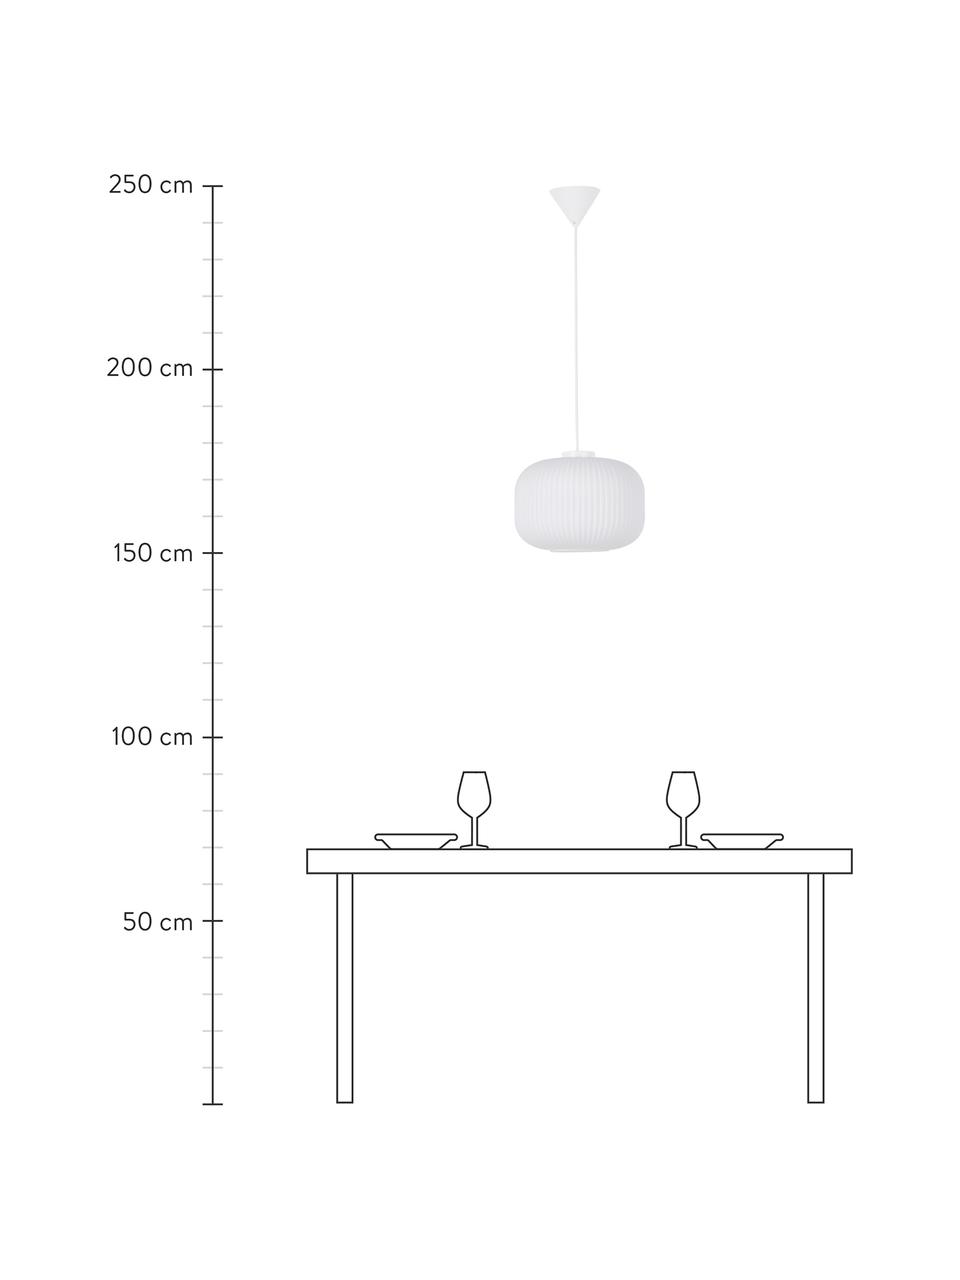 Lámpara de techo de vidrio opalino Mildford, Pantalla: vidrio opalino, Anclaje: plástico, Cable: cubierto en tela, Blanco, Ø 30 x Al 28 cm